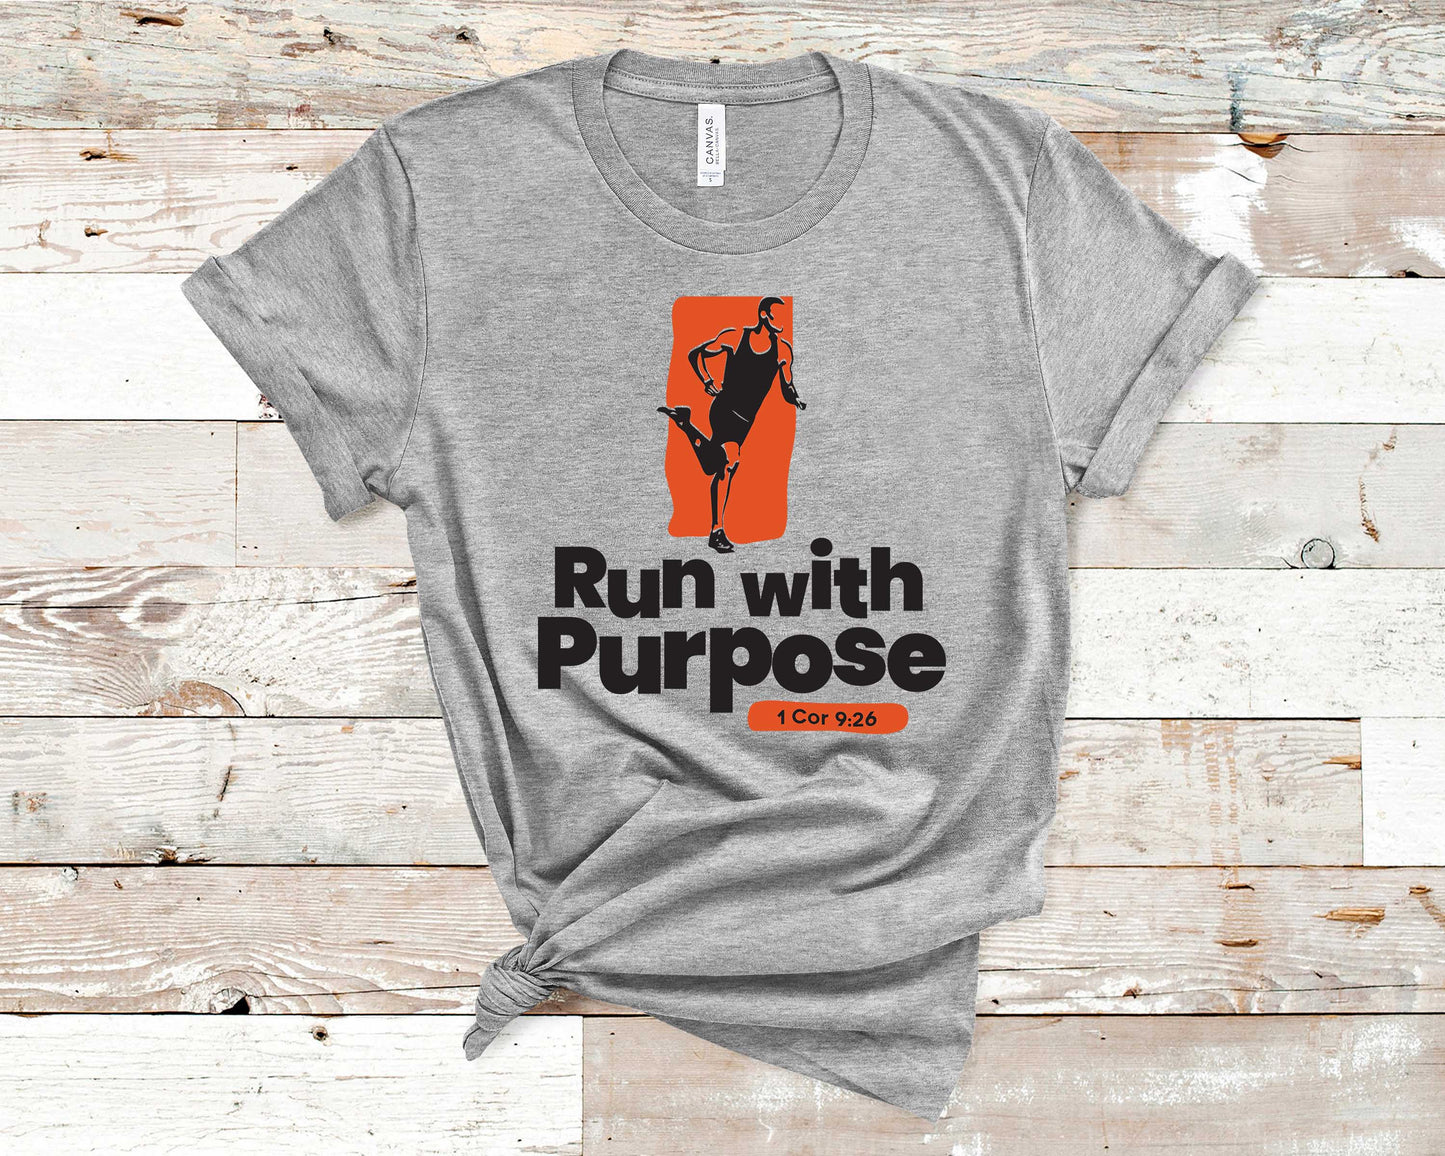 Run with Purpose - Fitness Shirt